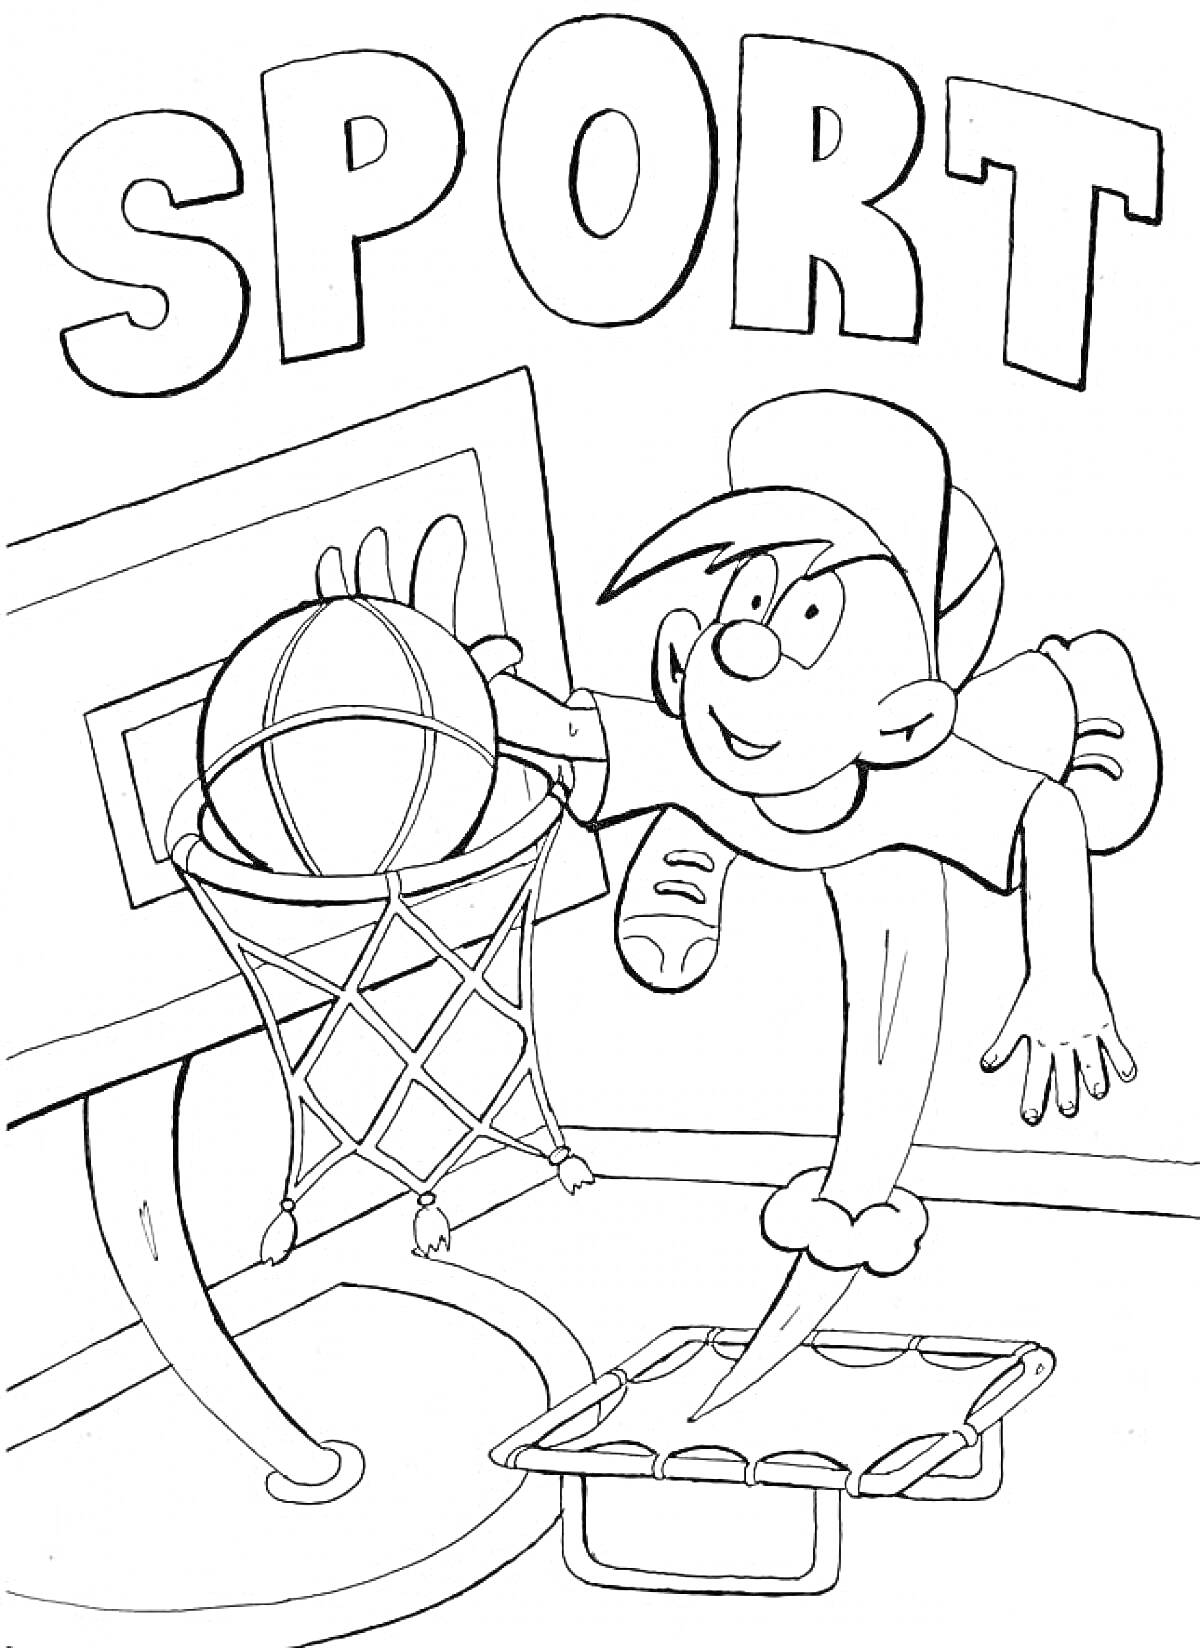 Раскраска Мальчик в бейсболке играет в баскетбол, забрасывая мяч в корзину с баскетбольным кольцом на фоне надписи 